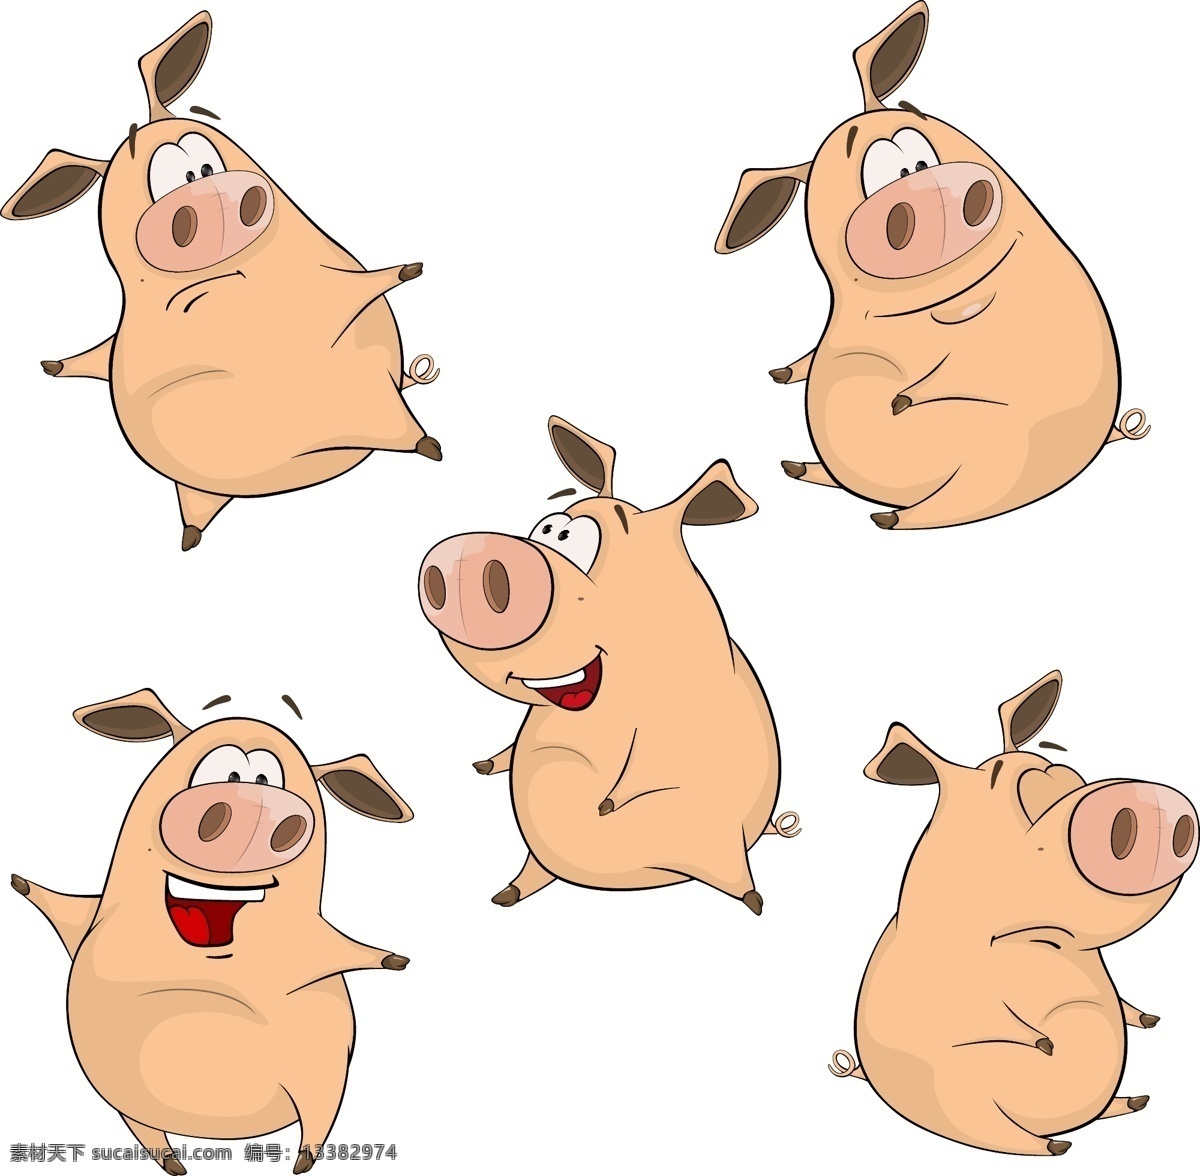 款 可爱 卡通 猪 矢量 动物 小猪 表情 插画 动作